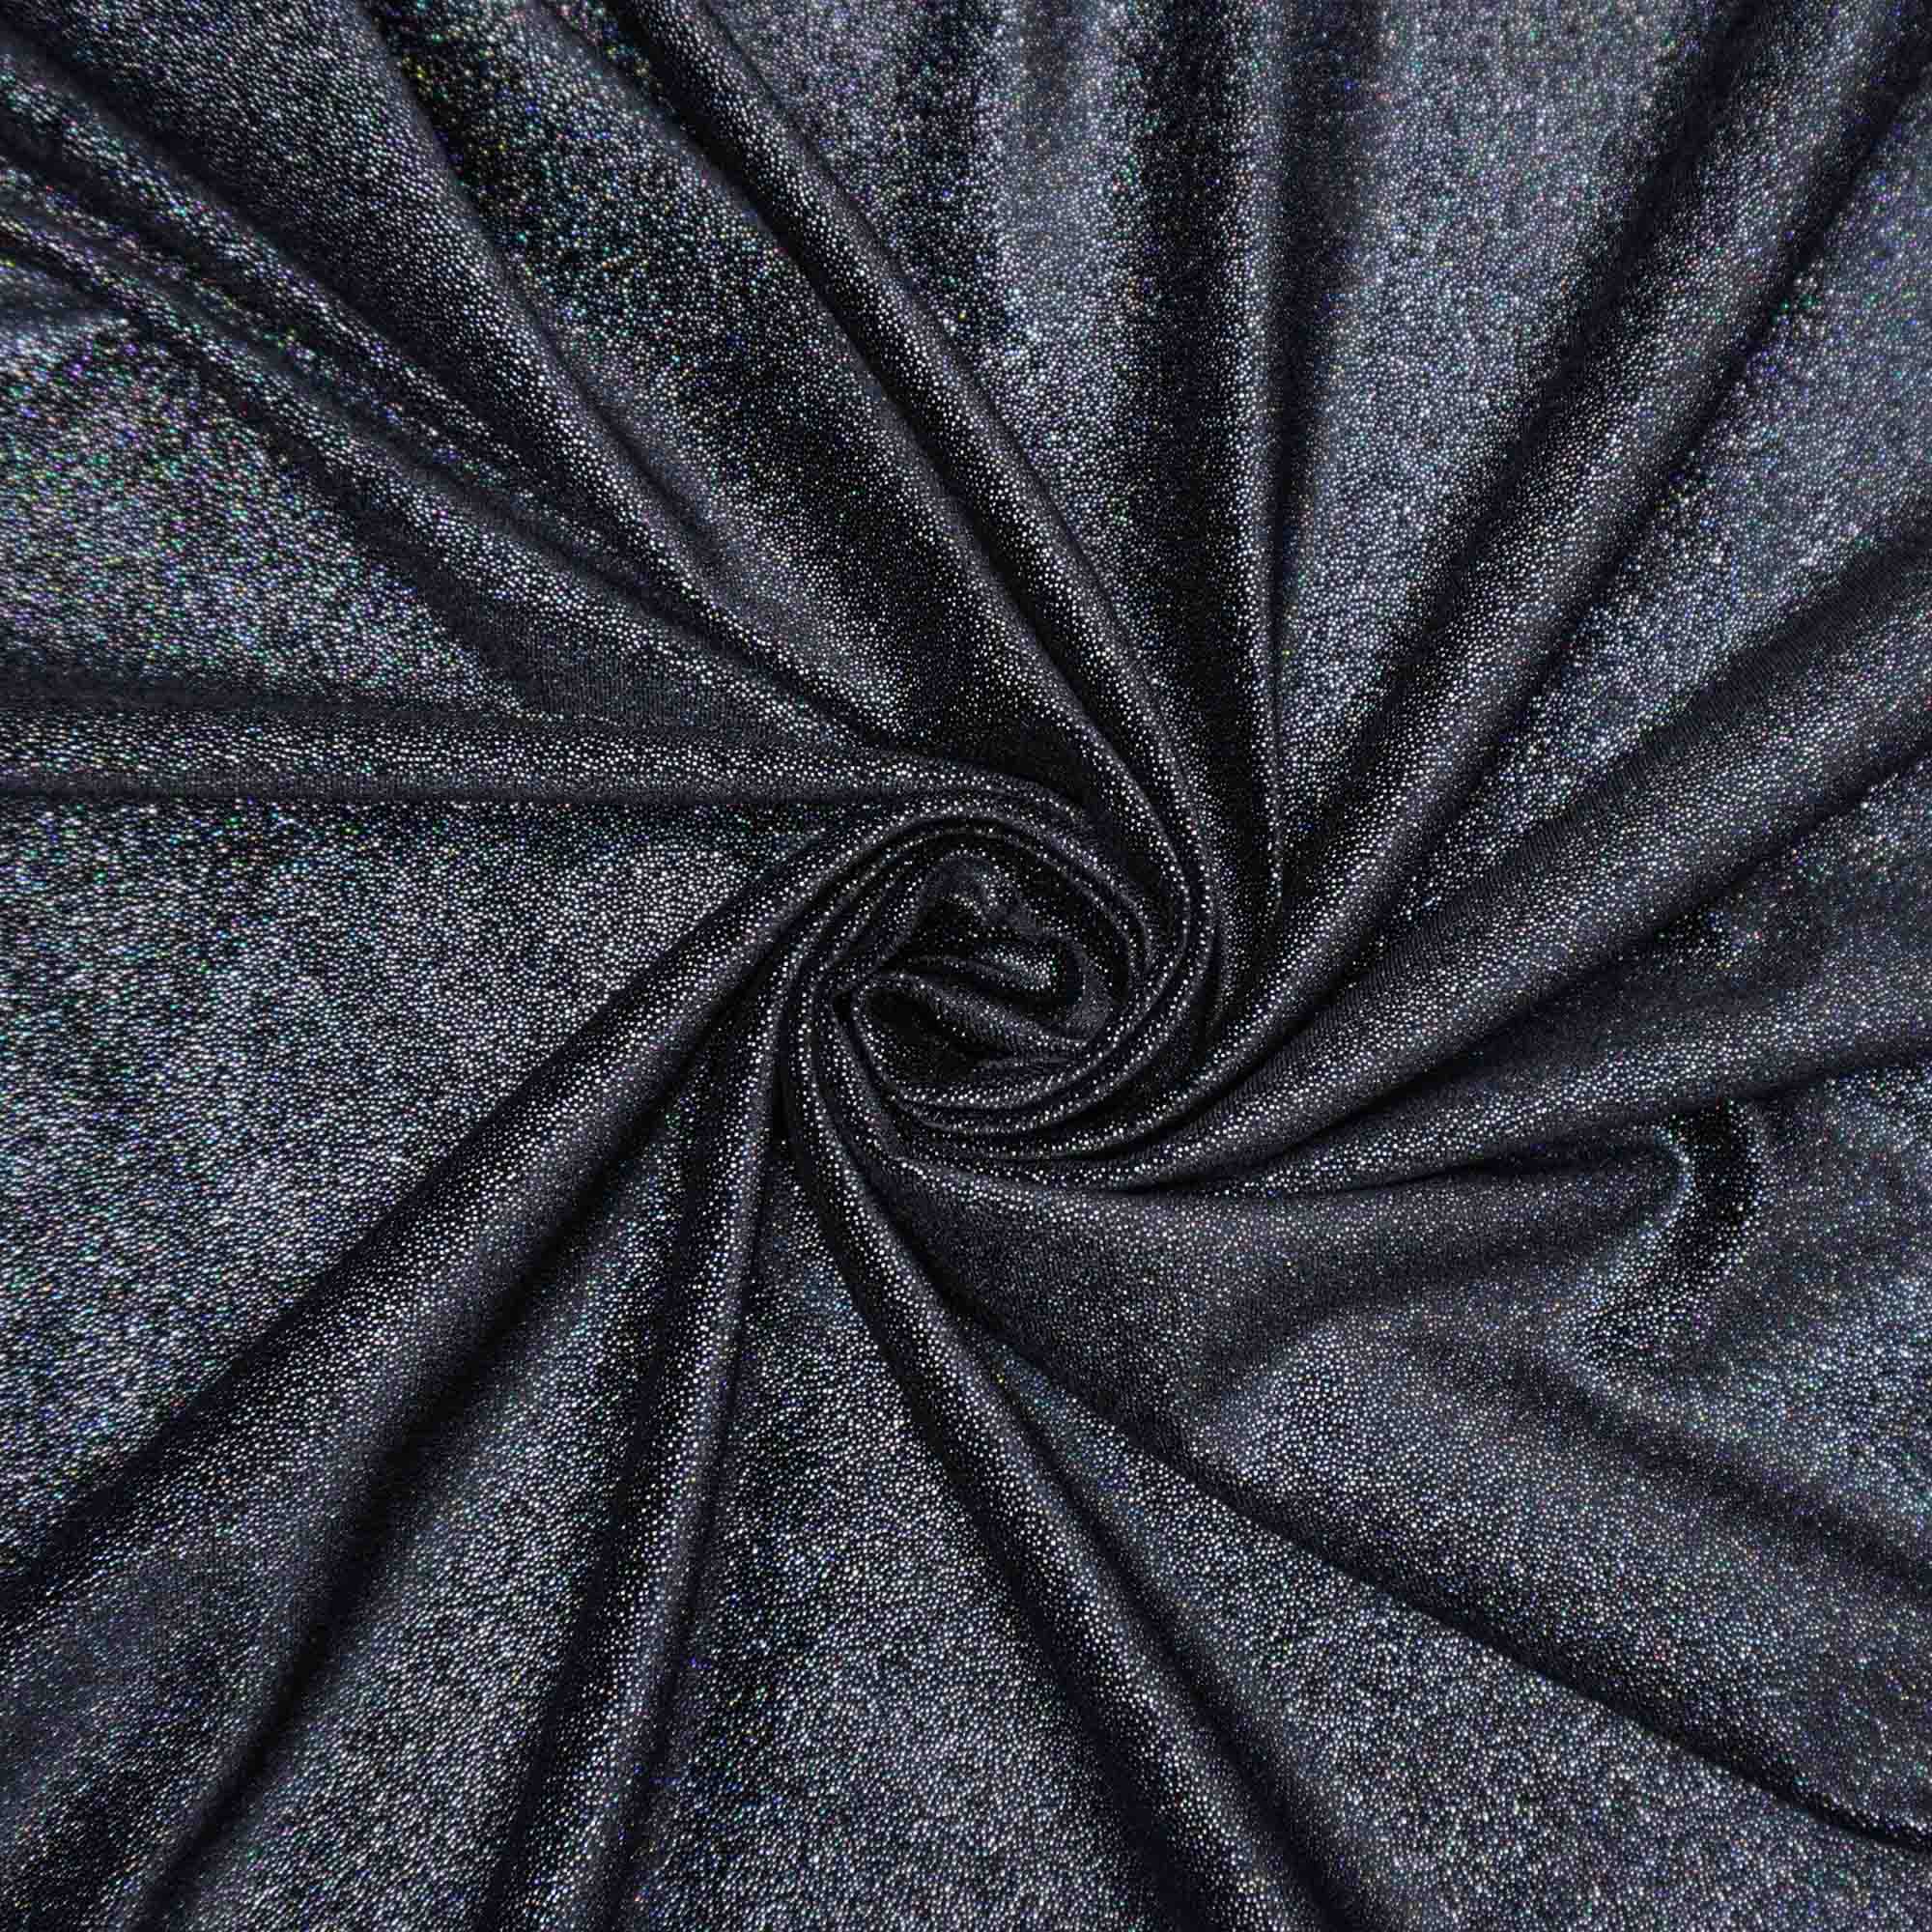 Tecido veludo preto com brilho furtacor